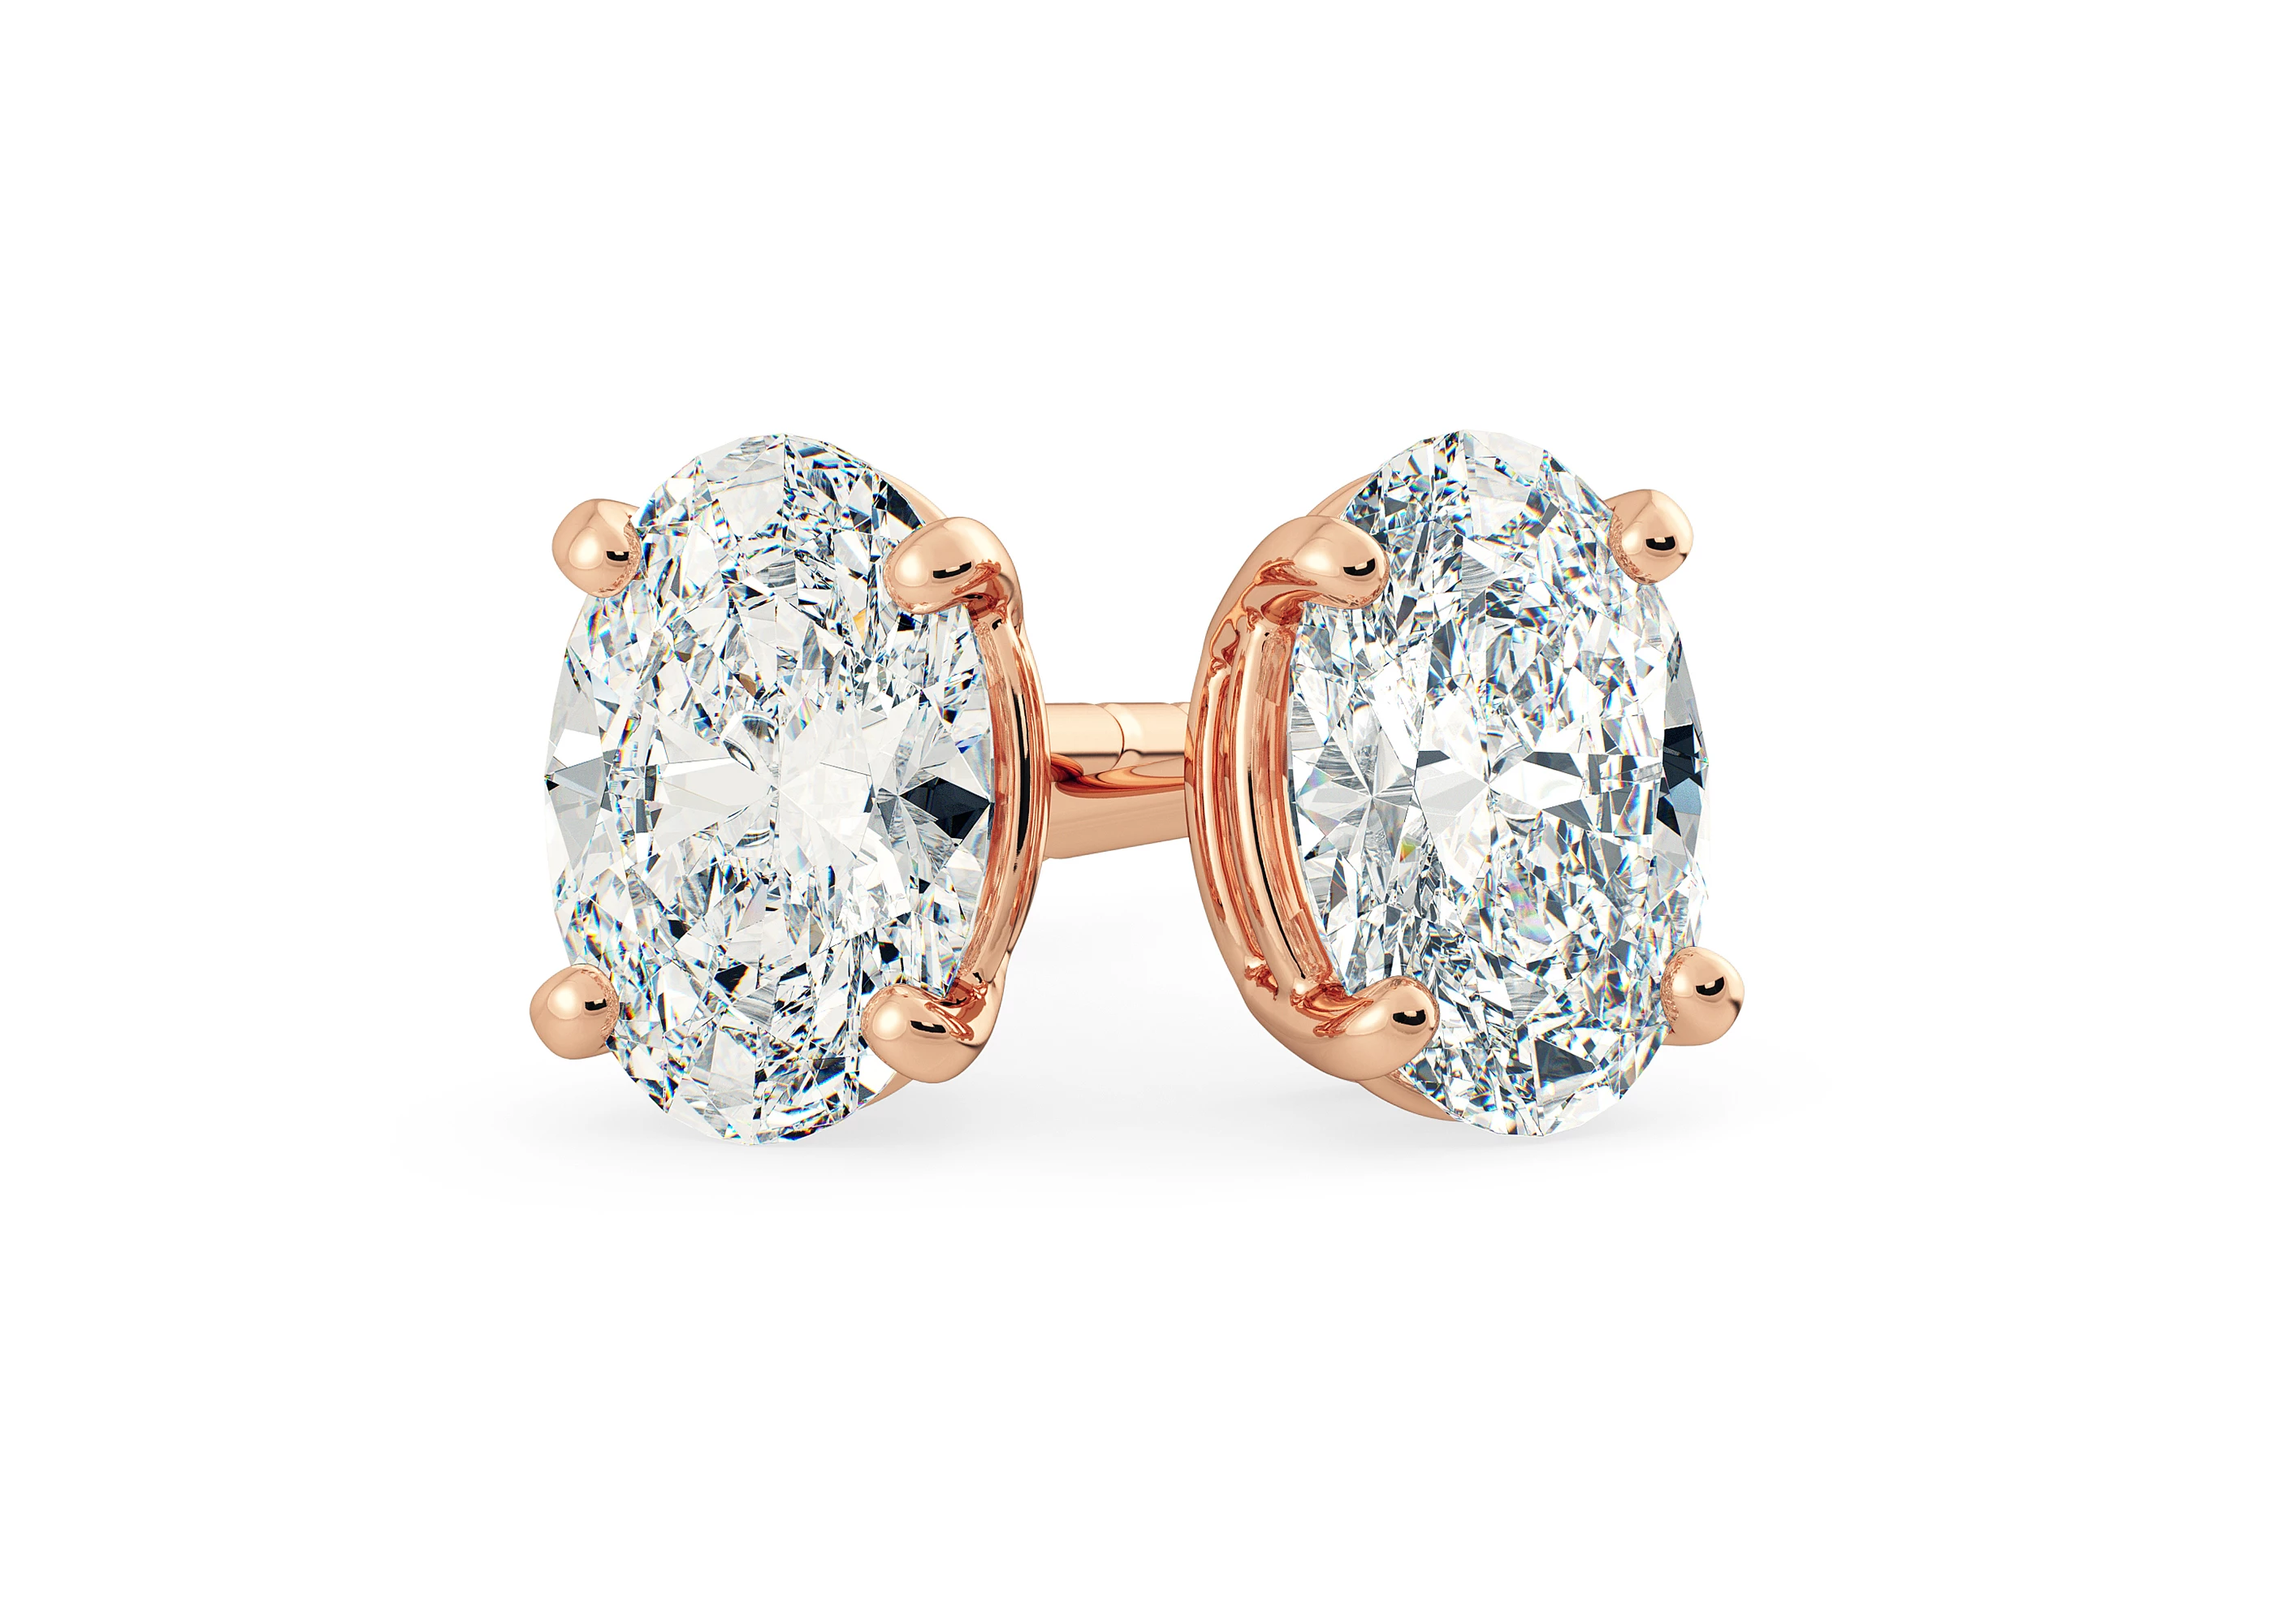 Half Carat Oval Diamond Stud Earrings in 18K Rose Gold